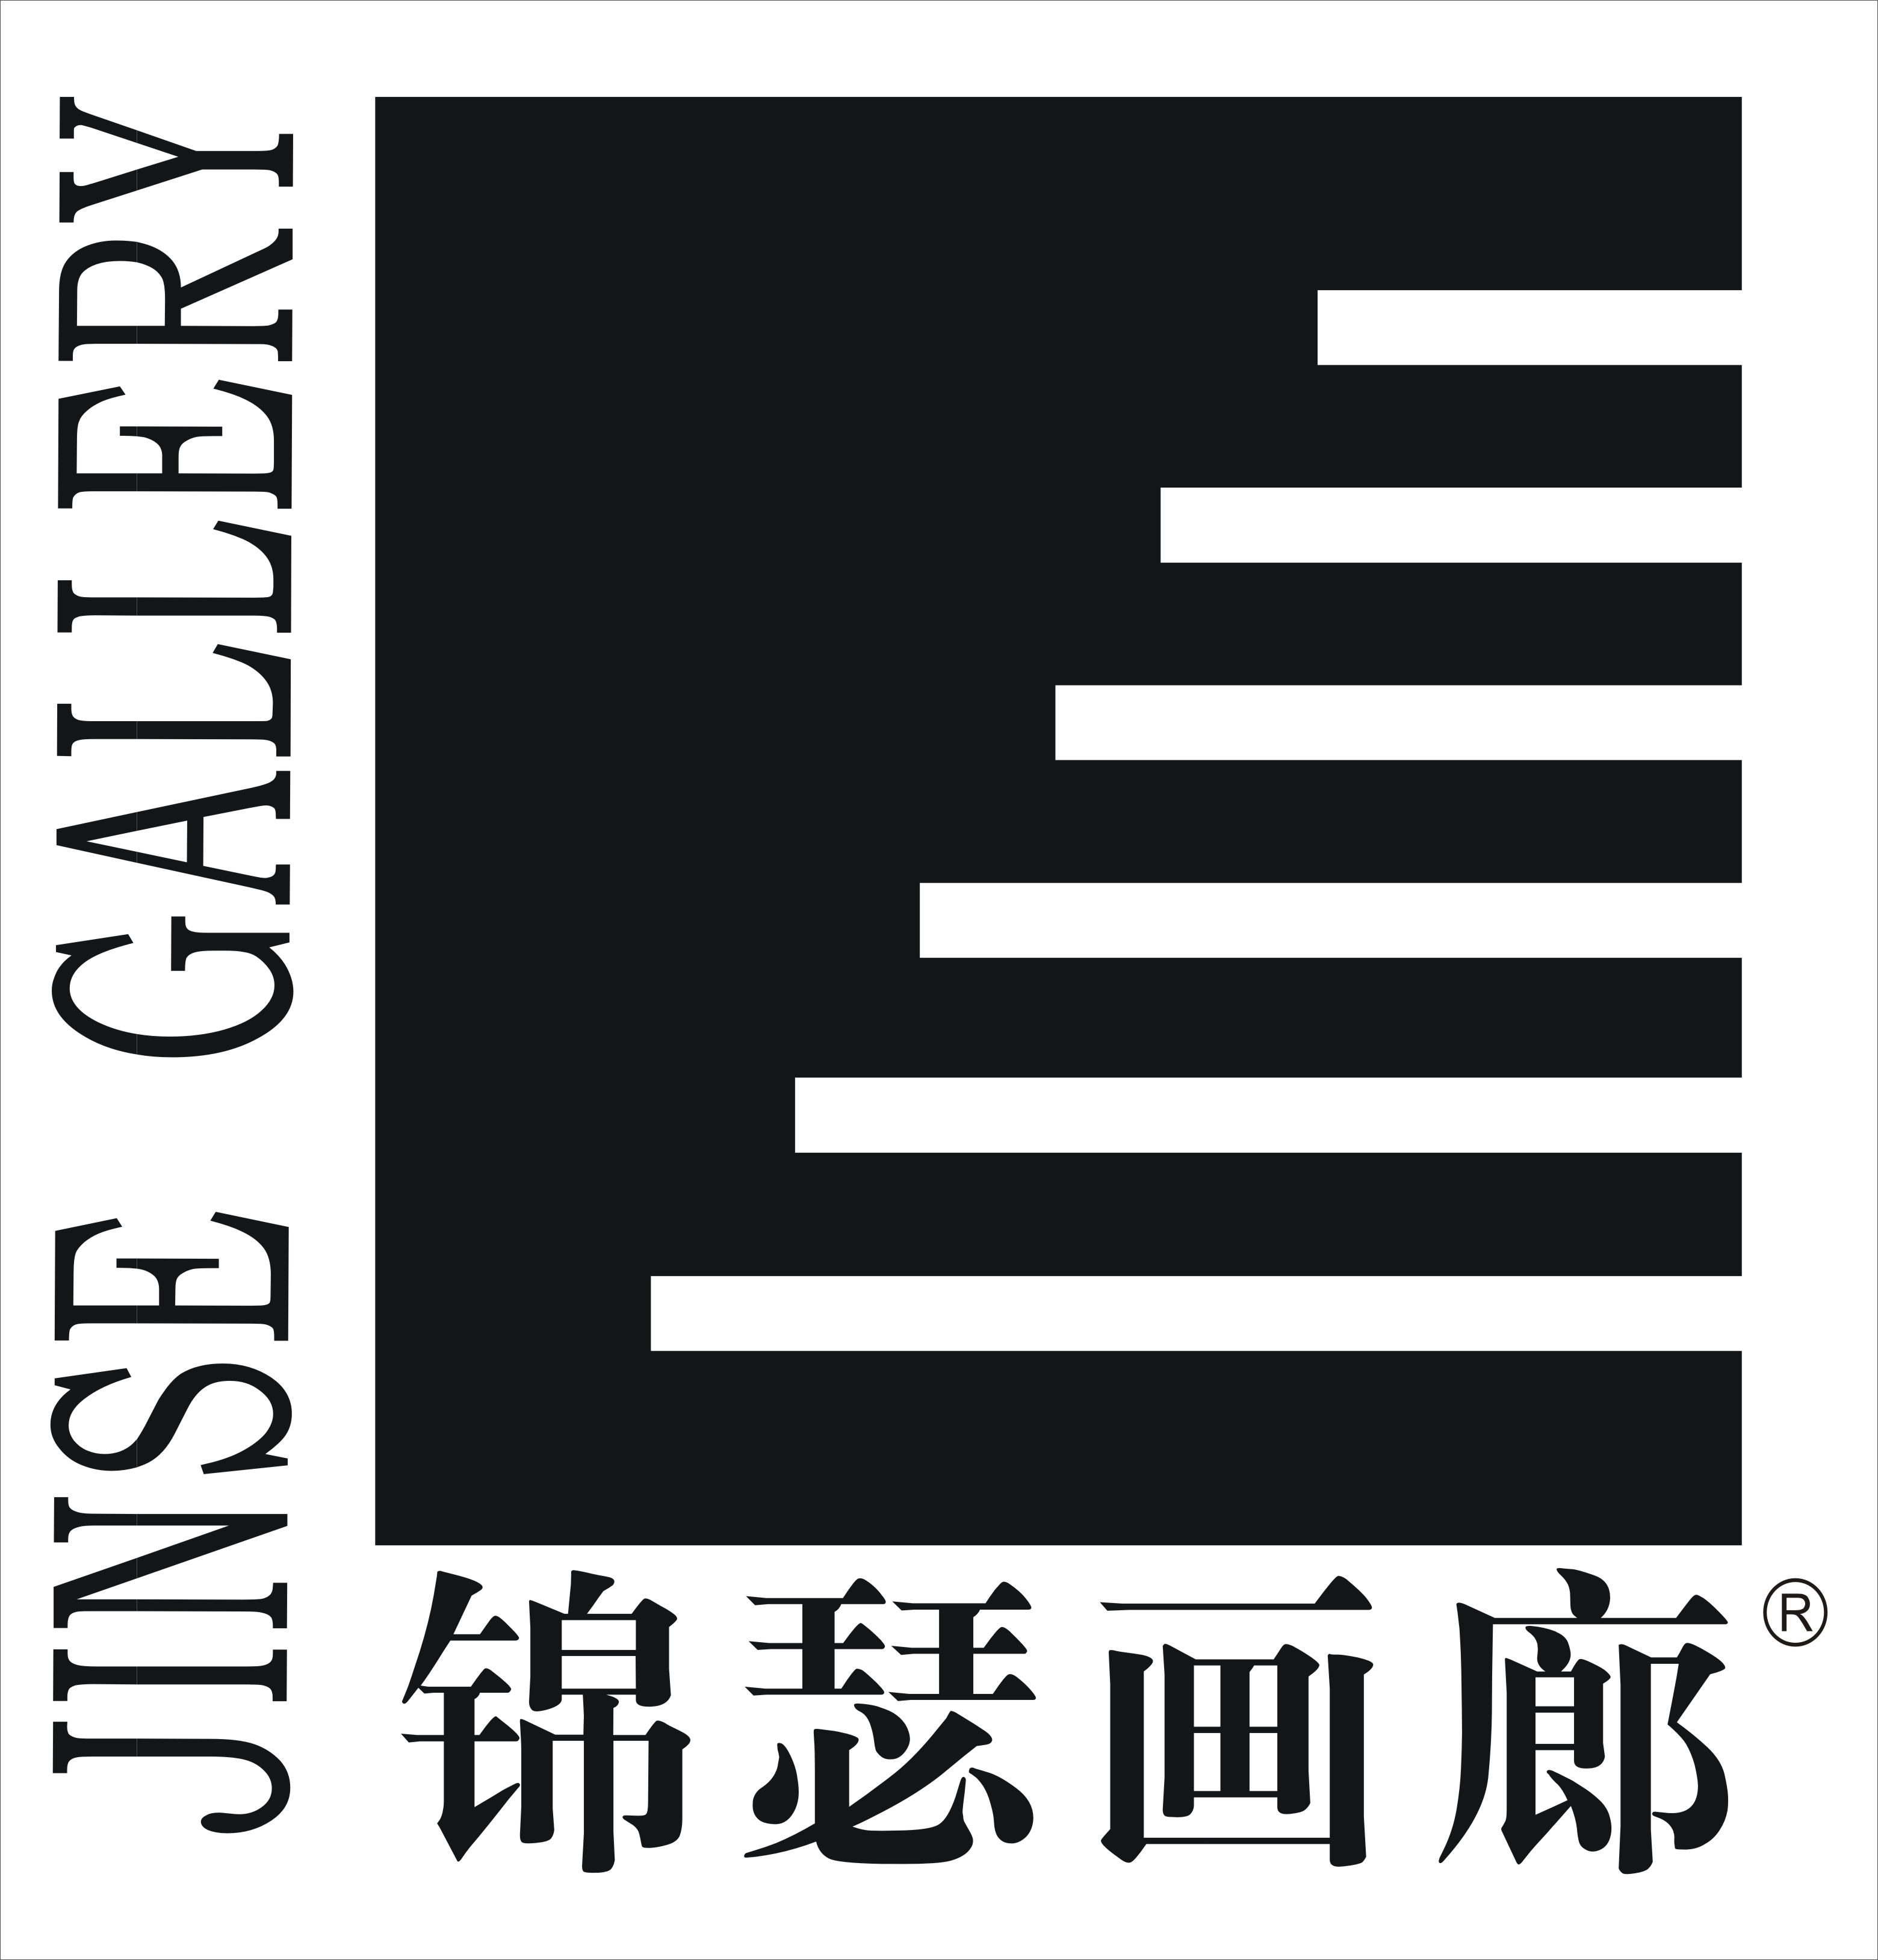 锦瑟画廊logo